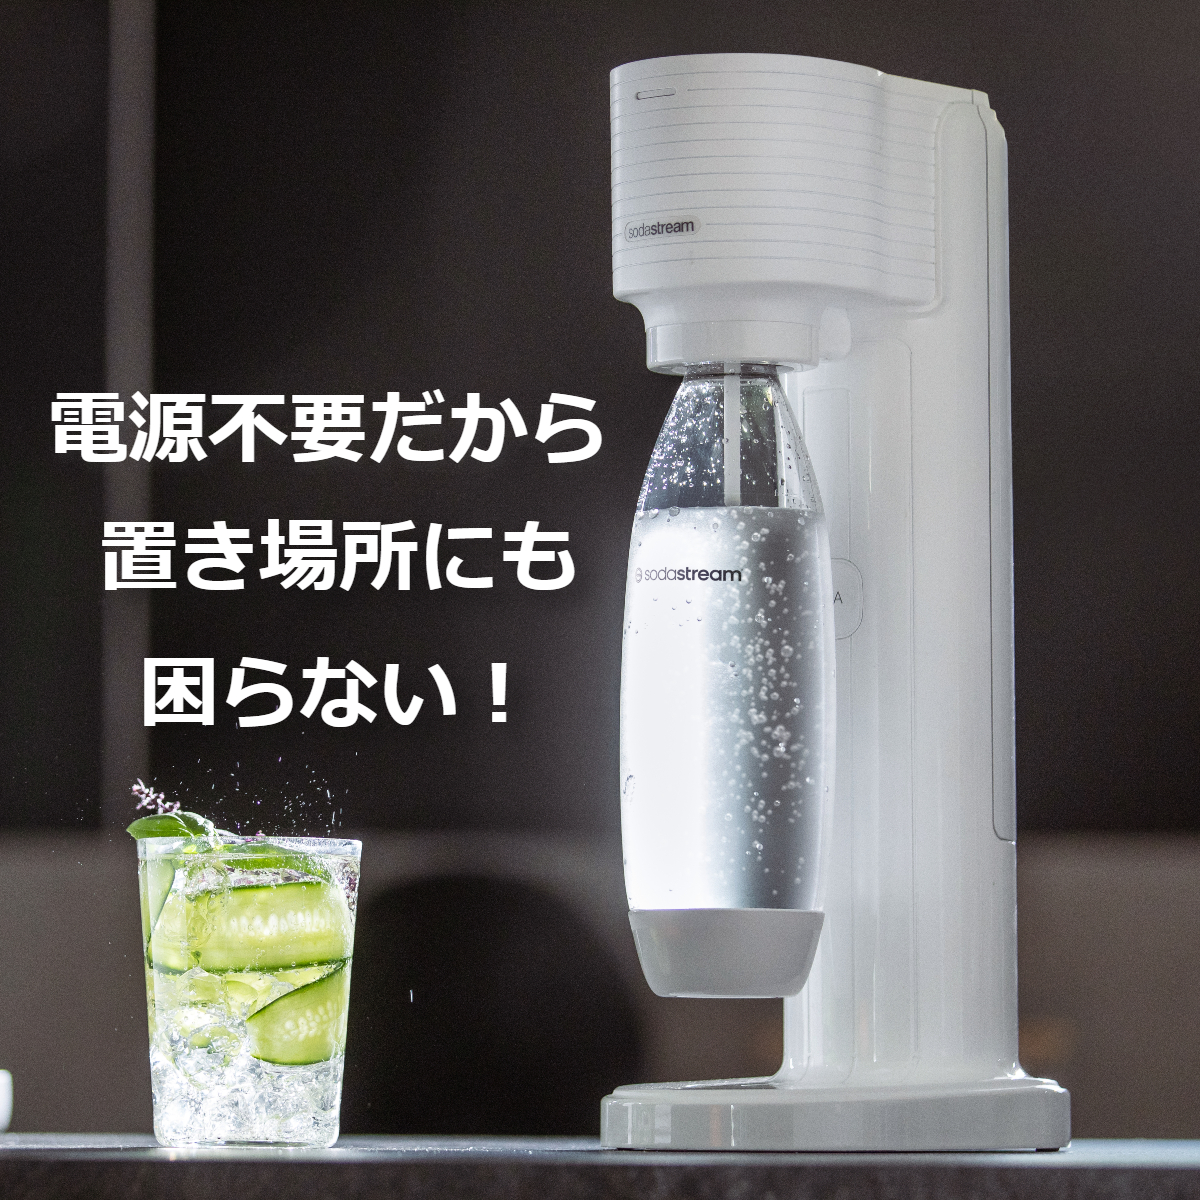 ソーダストリーム SodaStream / GAIA (ガイア) スターターキット